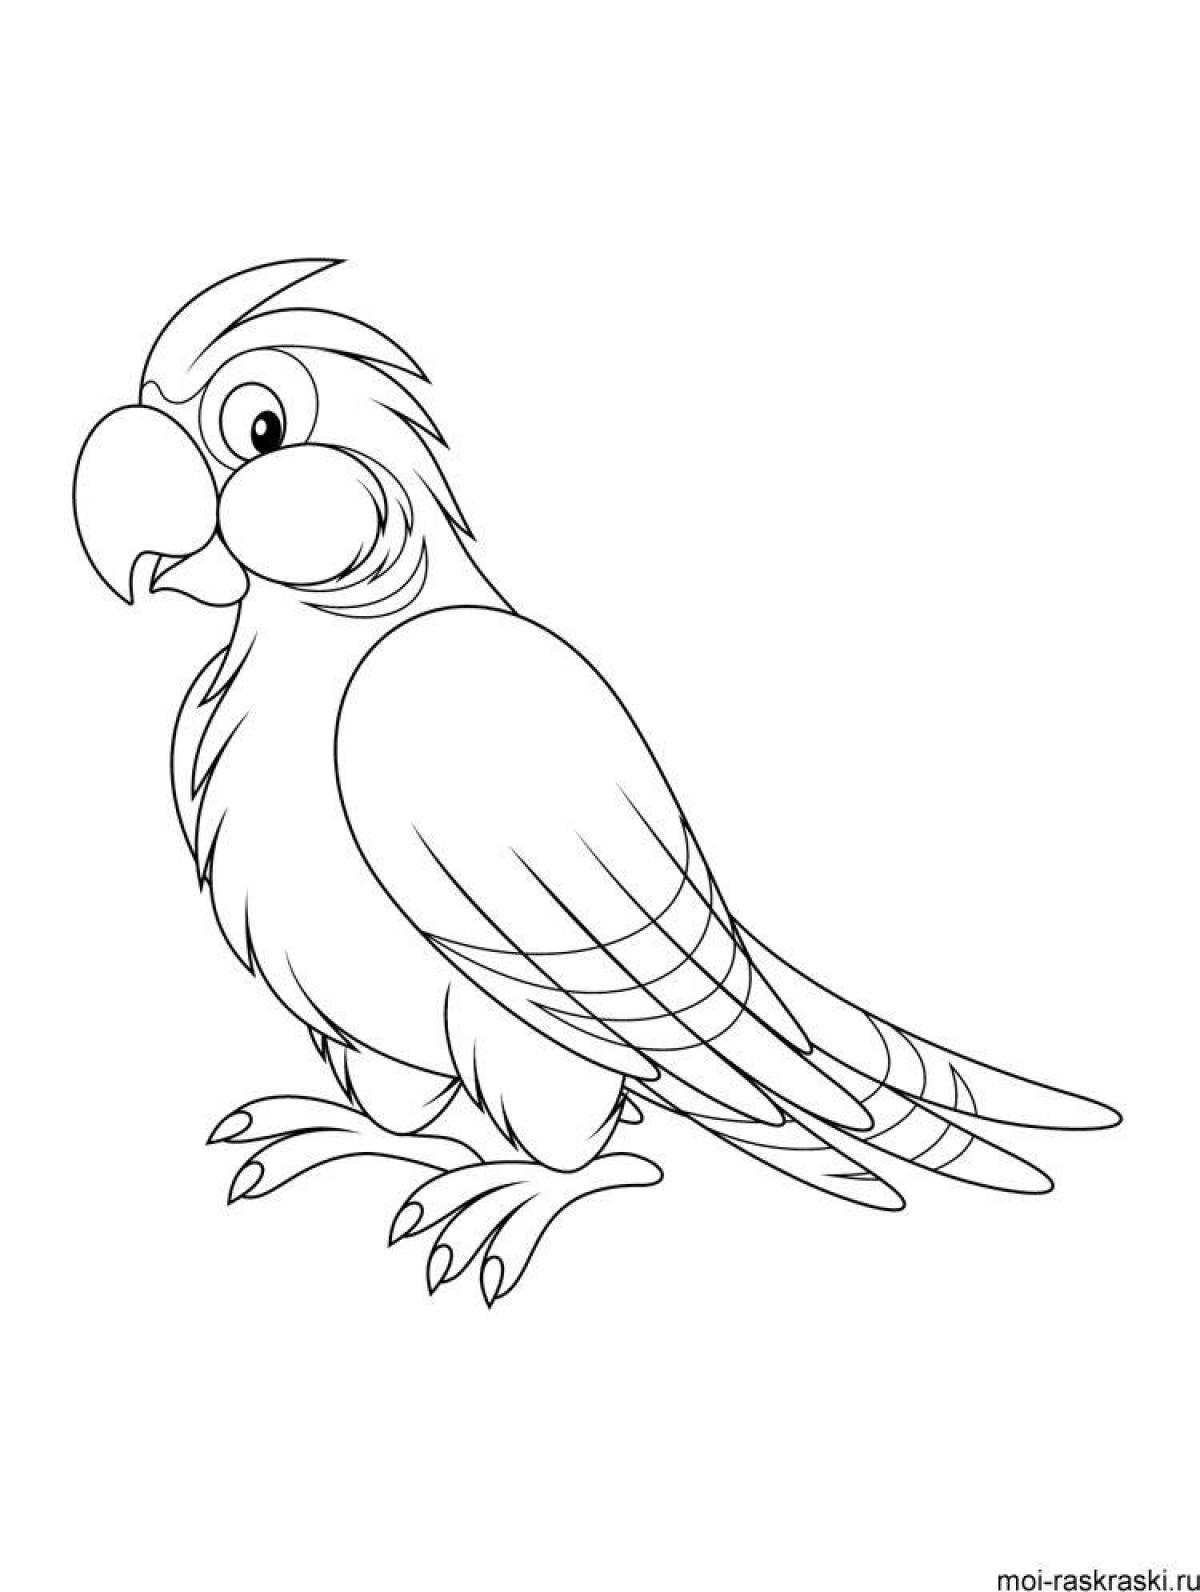 Раскраска радостный попугай